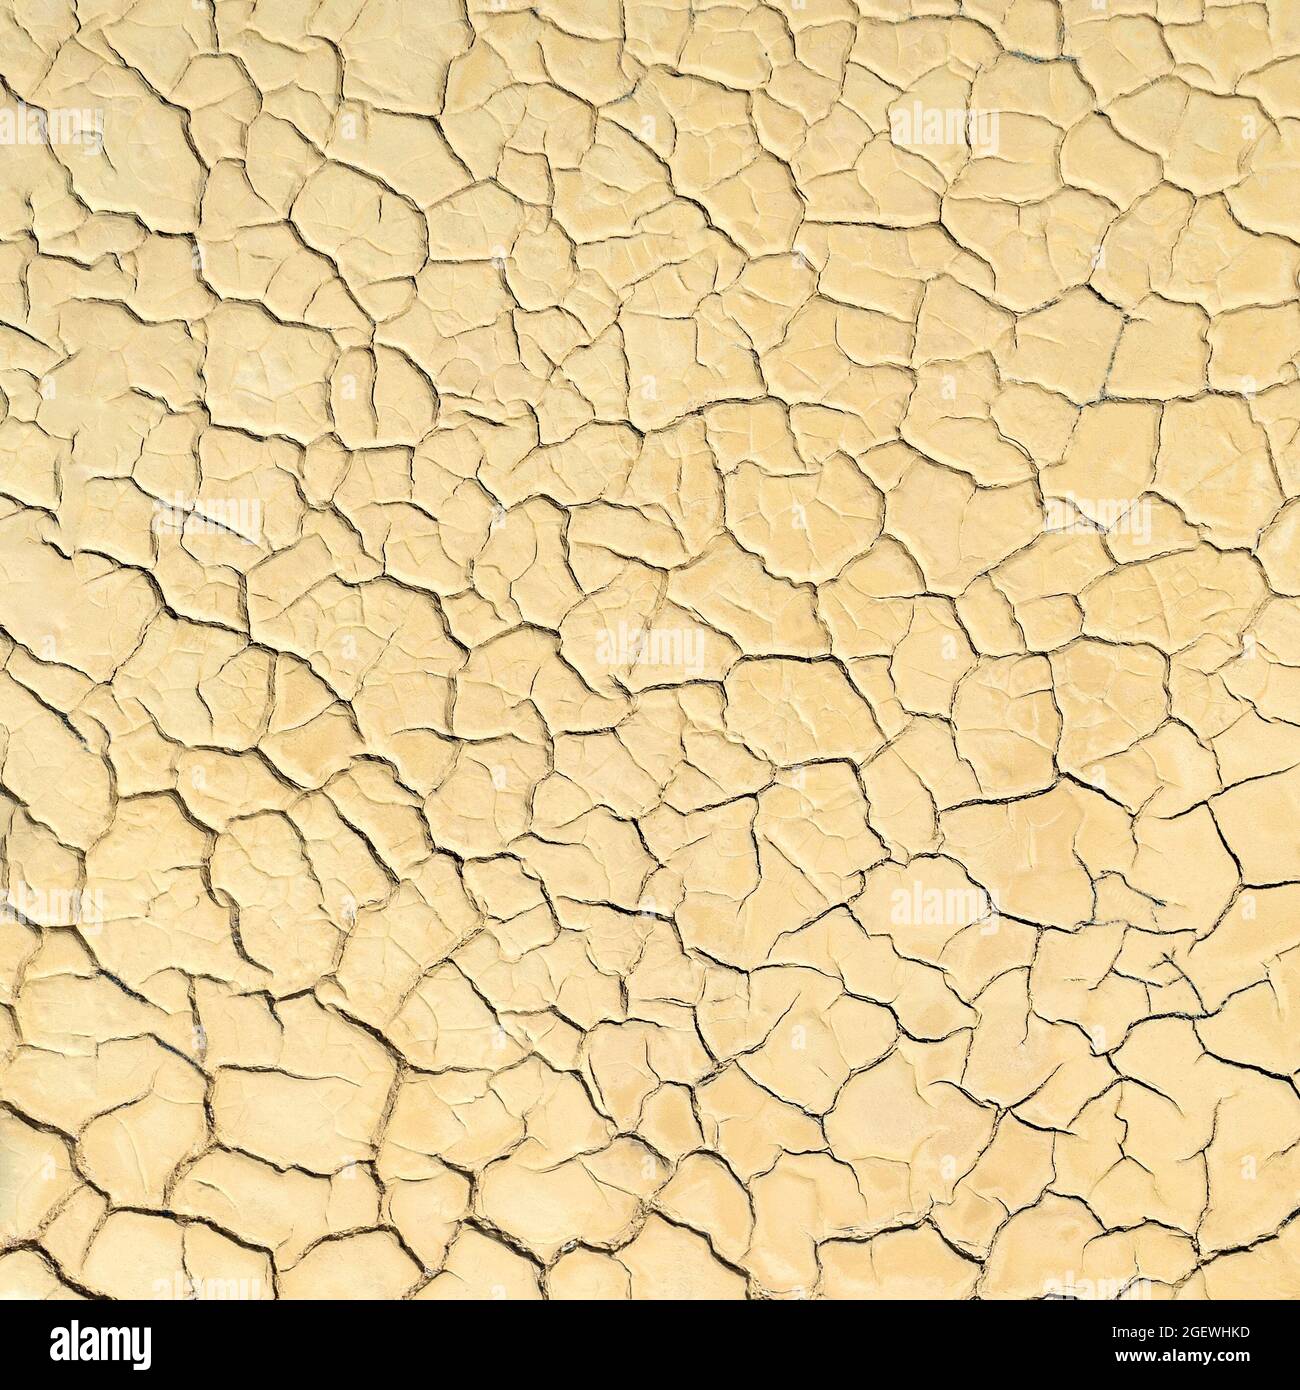 Oberfläche des getrockneten Seenbeckens mit Rissen im Schlamm. Natürlicher Hintergrund Stockfoto